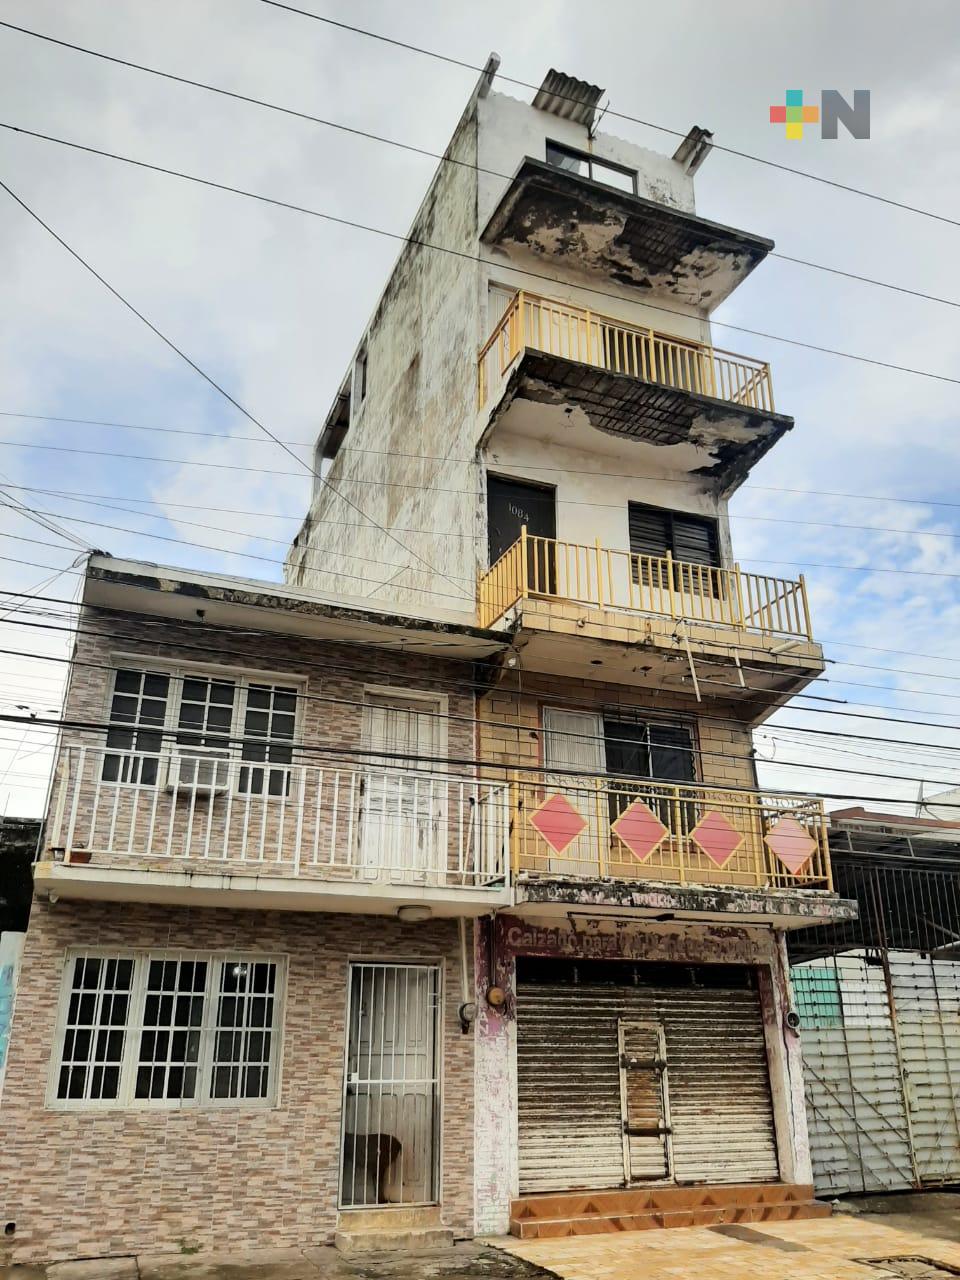 Edificio abandonado se cae a pedazos, un riesgo en ciudad de Veracruz